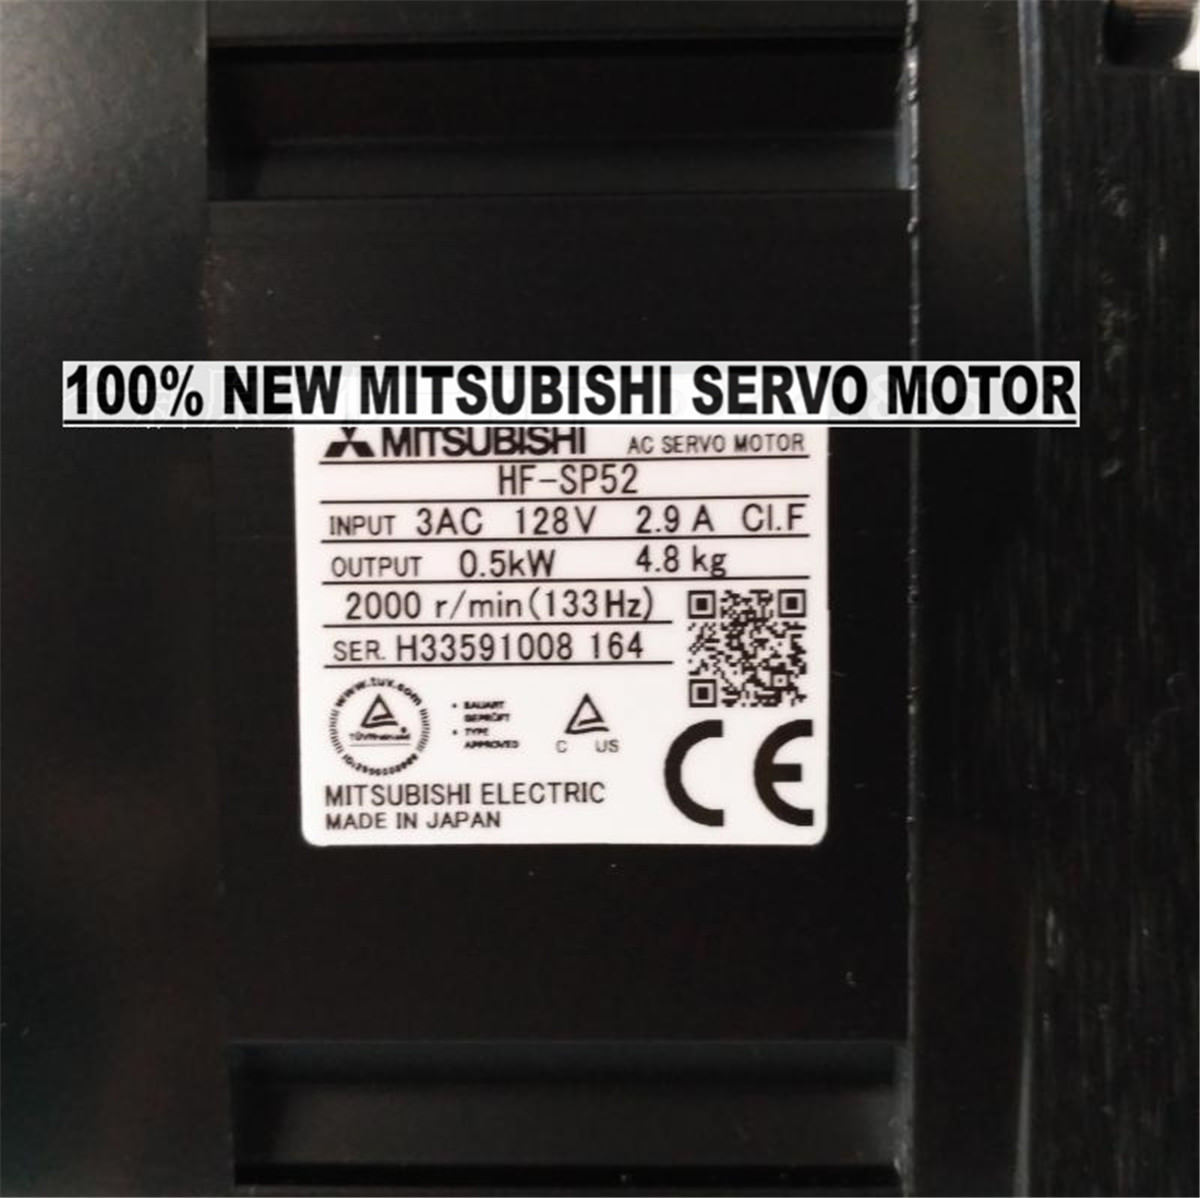 Brand NEW Mitsubishi Servo Motor HF-SP52 in box HFSP52 - zum Schließen ins Bild klicken